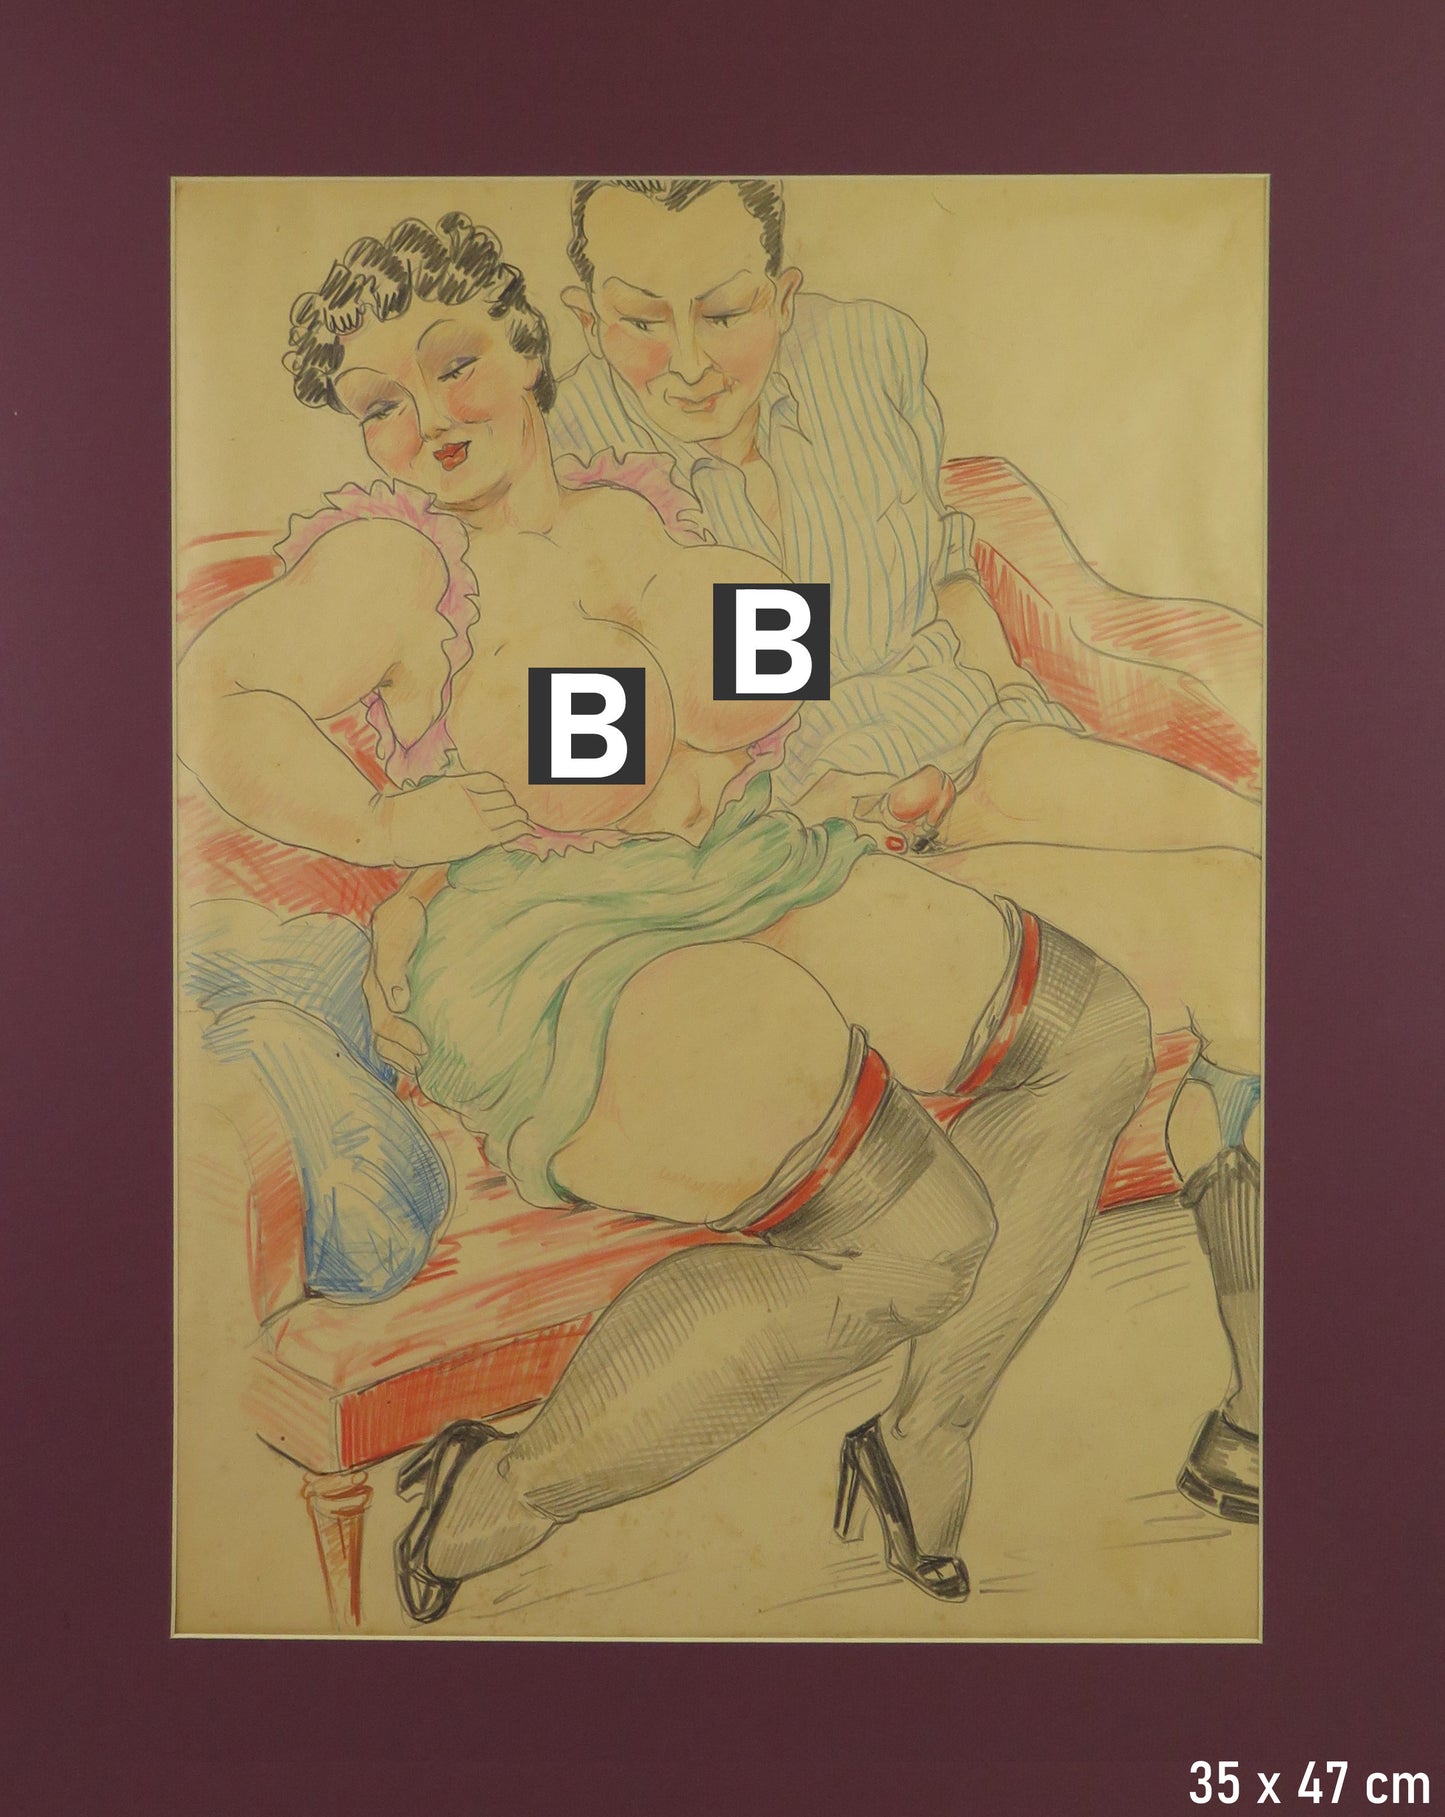 Collezione di 10 disegni erotici porno artistico vintage provenienti dalla casa chiusa di Torino Via Conte Verde nudi scene erotiche artistiche BM53.8